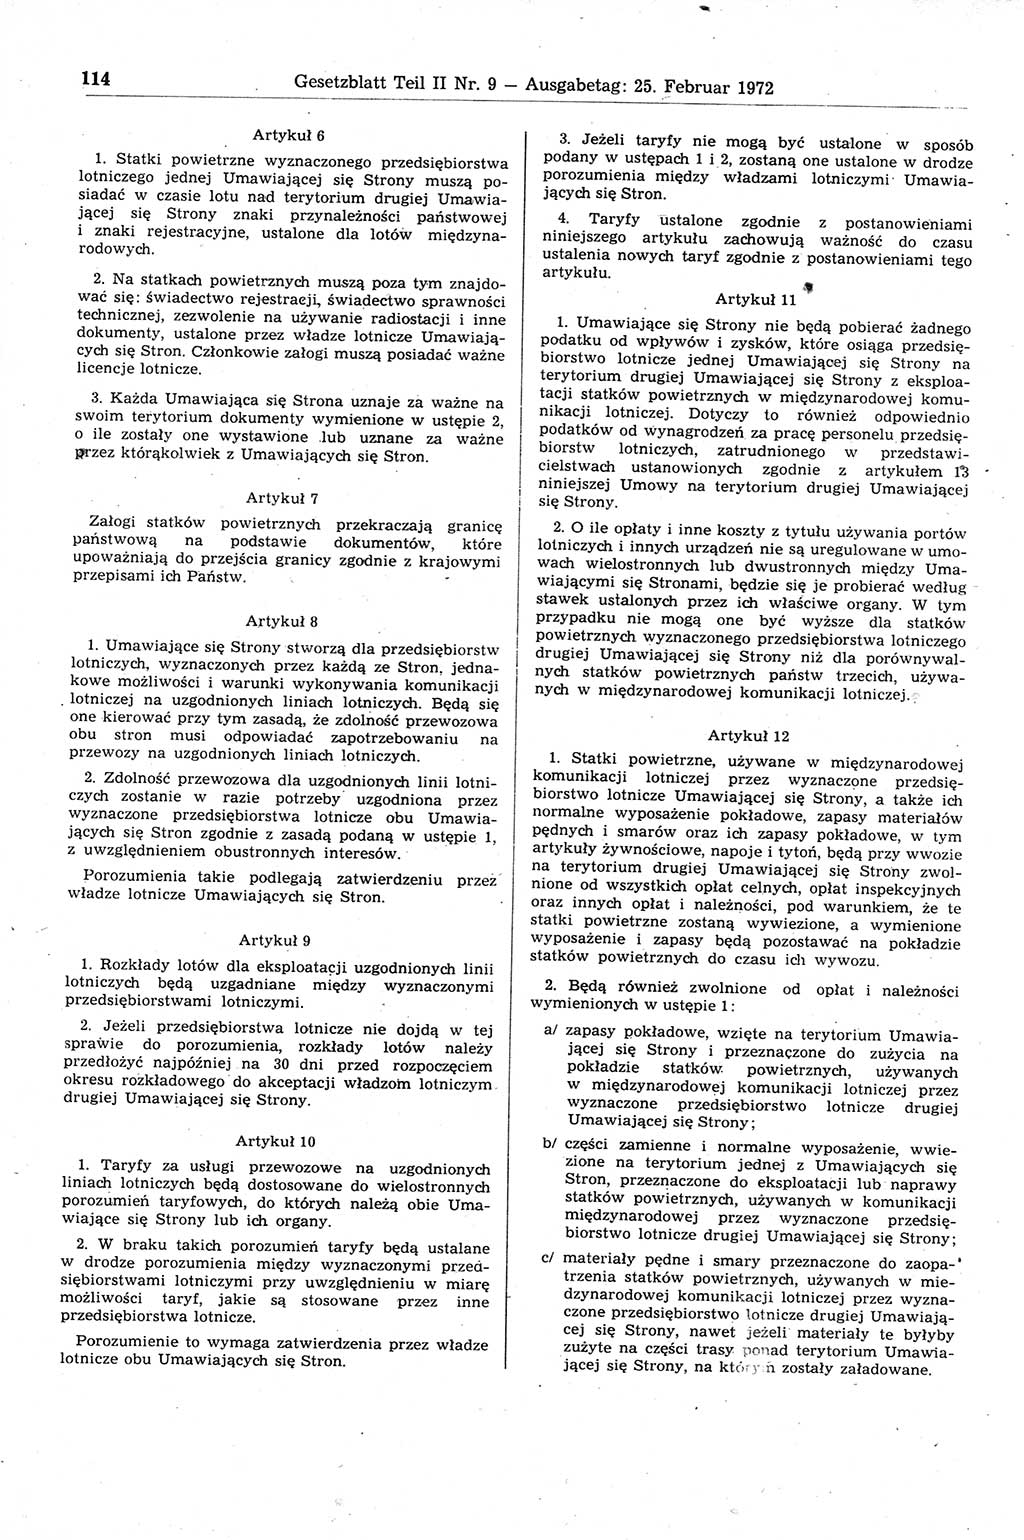 Gesetzblatt (GBl.) der Deutschen Demokratischen Republik (DDR) Teil ⅠⅠ 1972, Seite 114 (GBl. DDR ⅠⅠ 1972, S. 114)